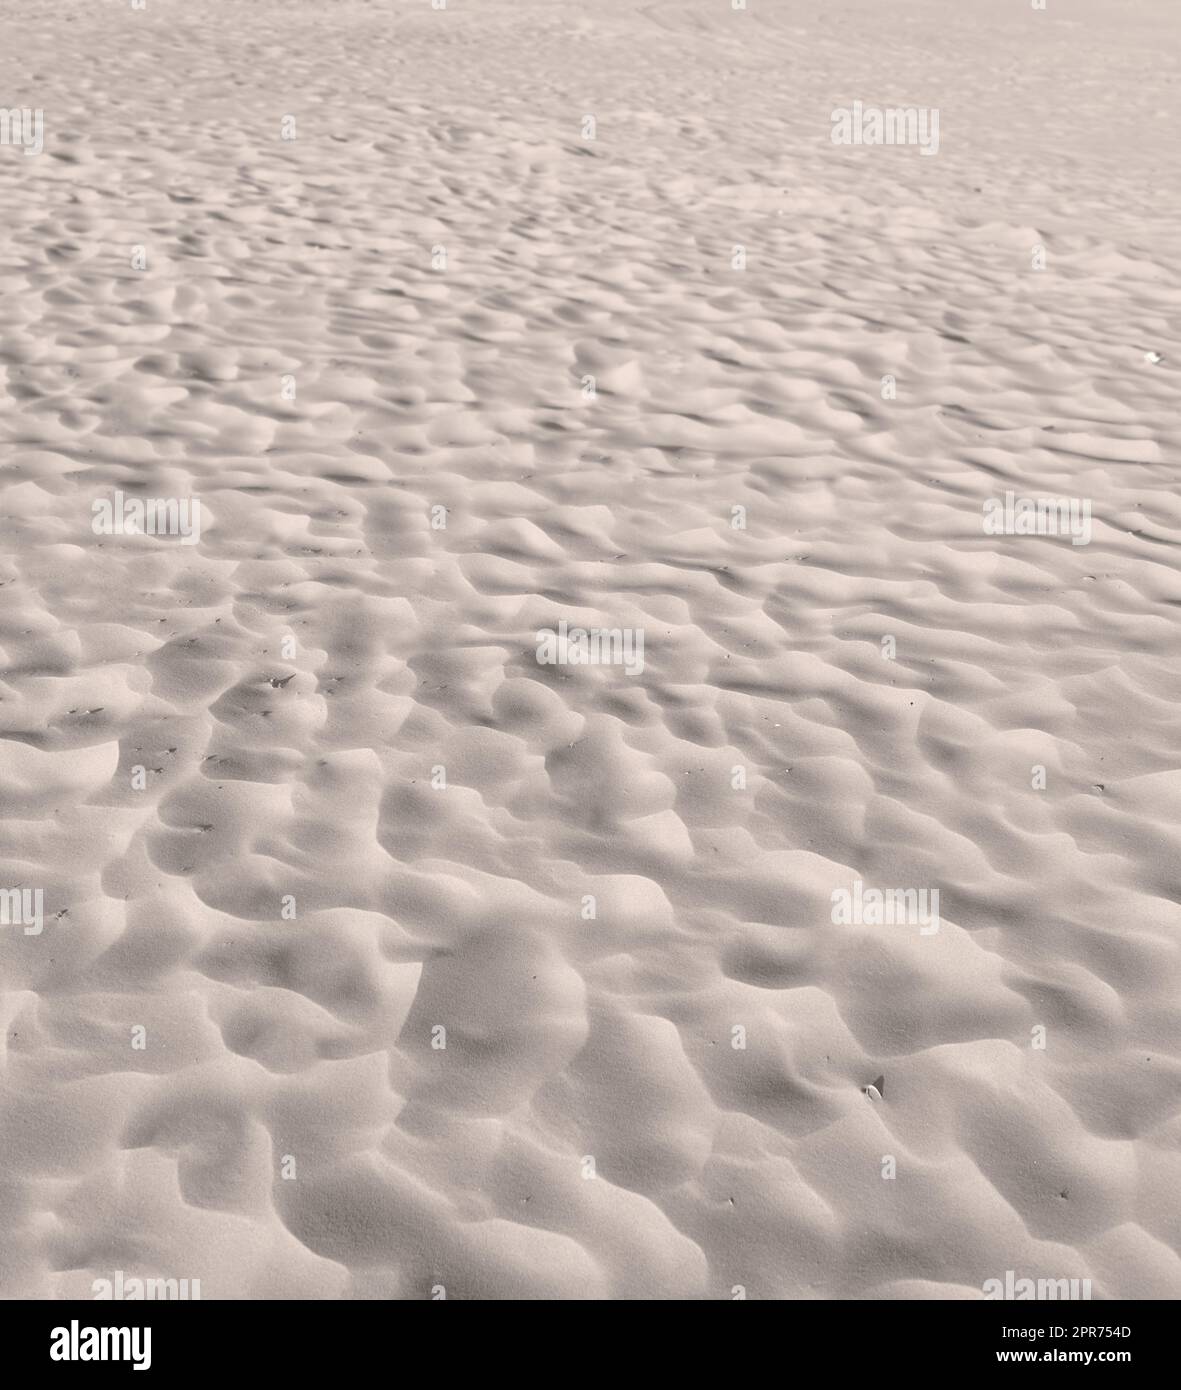 Plage de sable des dunes du désert avec des ondulations le long de la côte dans la nature par une journée ensoleillée. Gros plan d'un paysage pittoresque sur le bord de mer avec recopie arrière-plan en plein air. Un endroit calme pour se sentir zen Banque D'Images